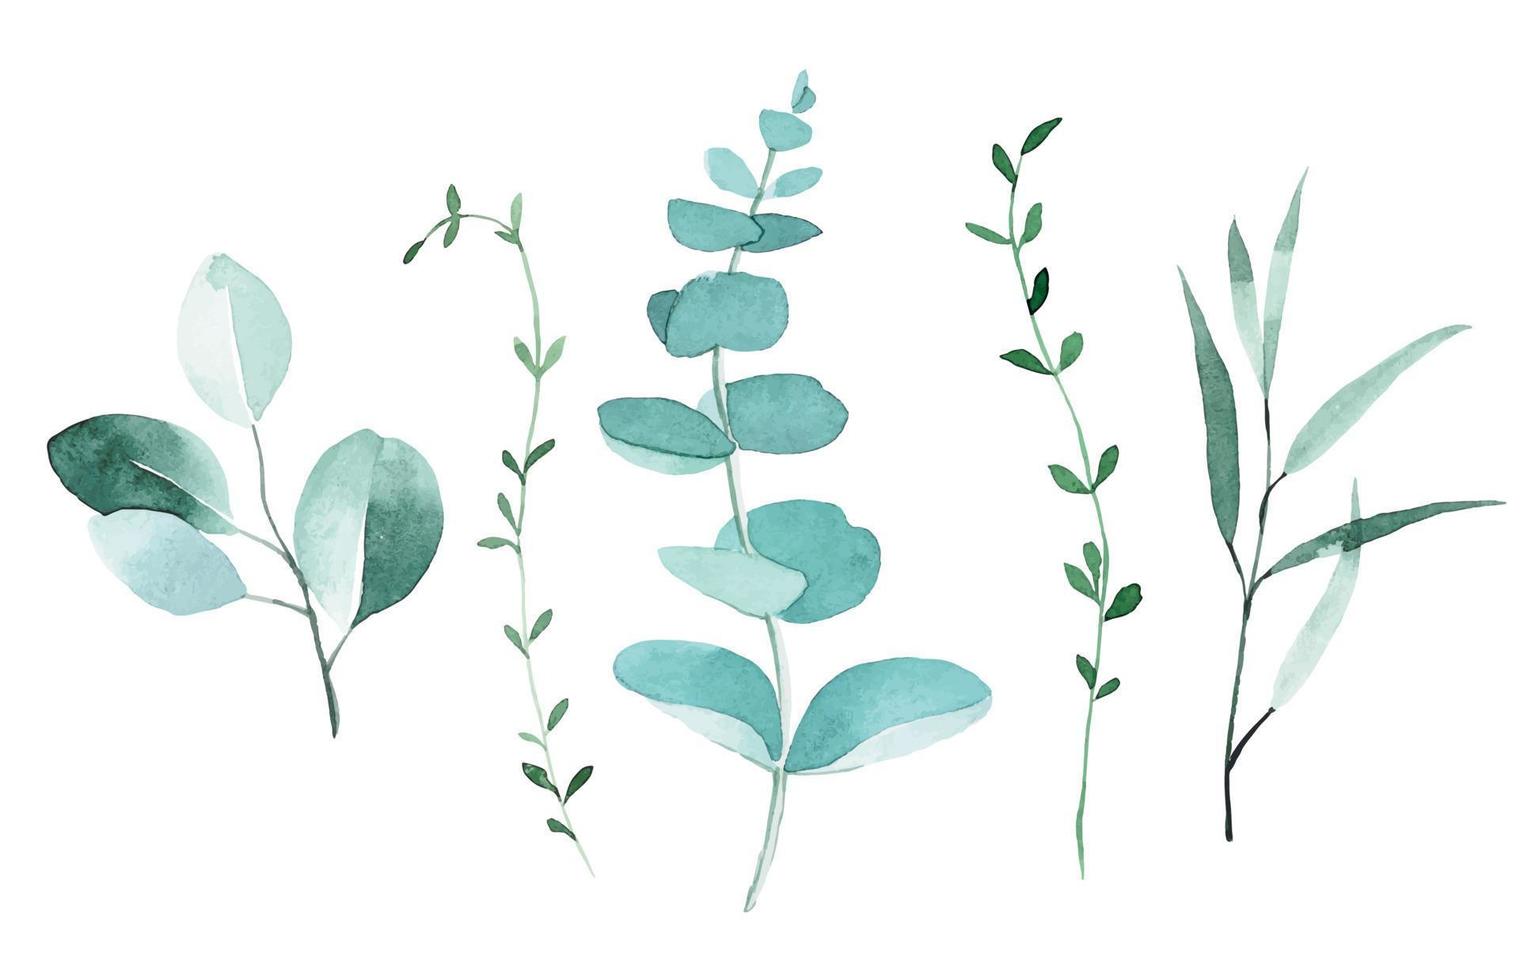 dibujo de acuarela. ambientado con hojas de eucalipto. dibujo elegante en estilo vintage. hojas y ramas de eucalipto y otras plantas tropicales vector